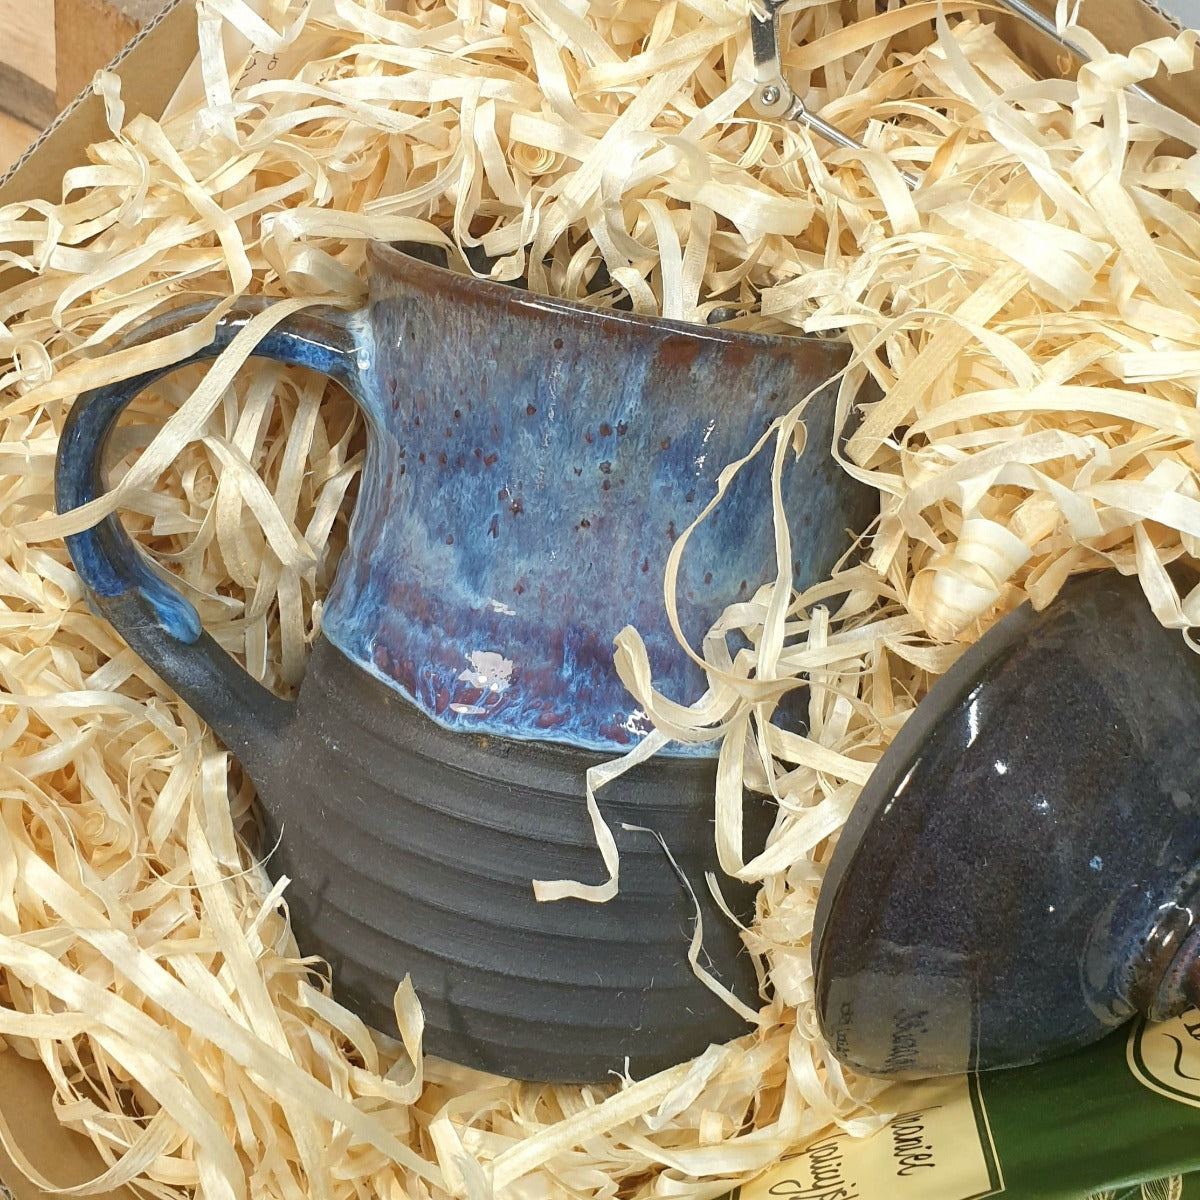 The n2 mug in the Tea Gift Set